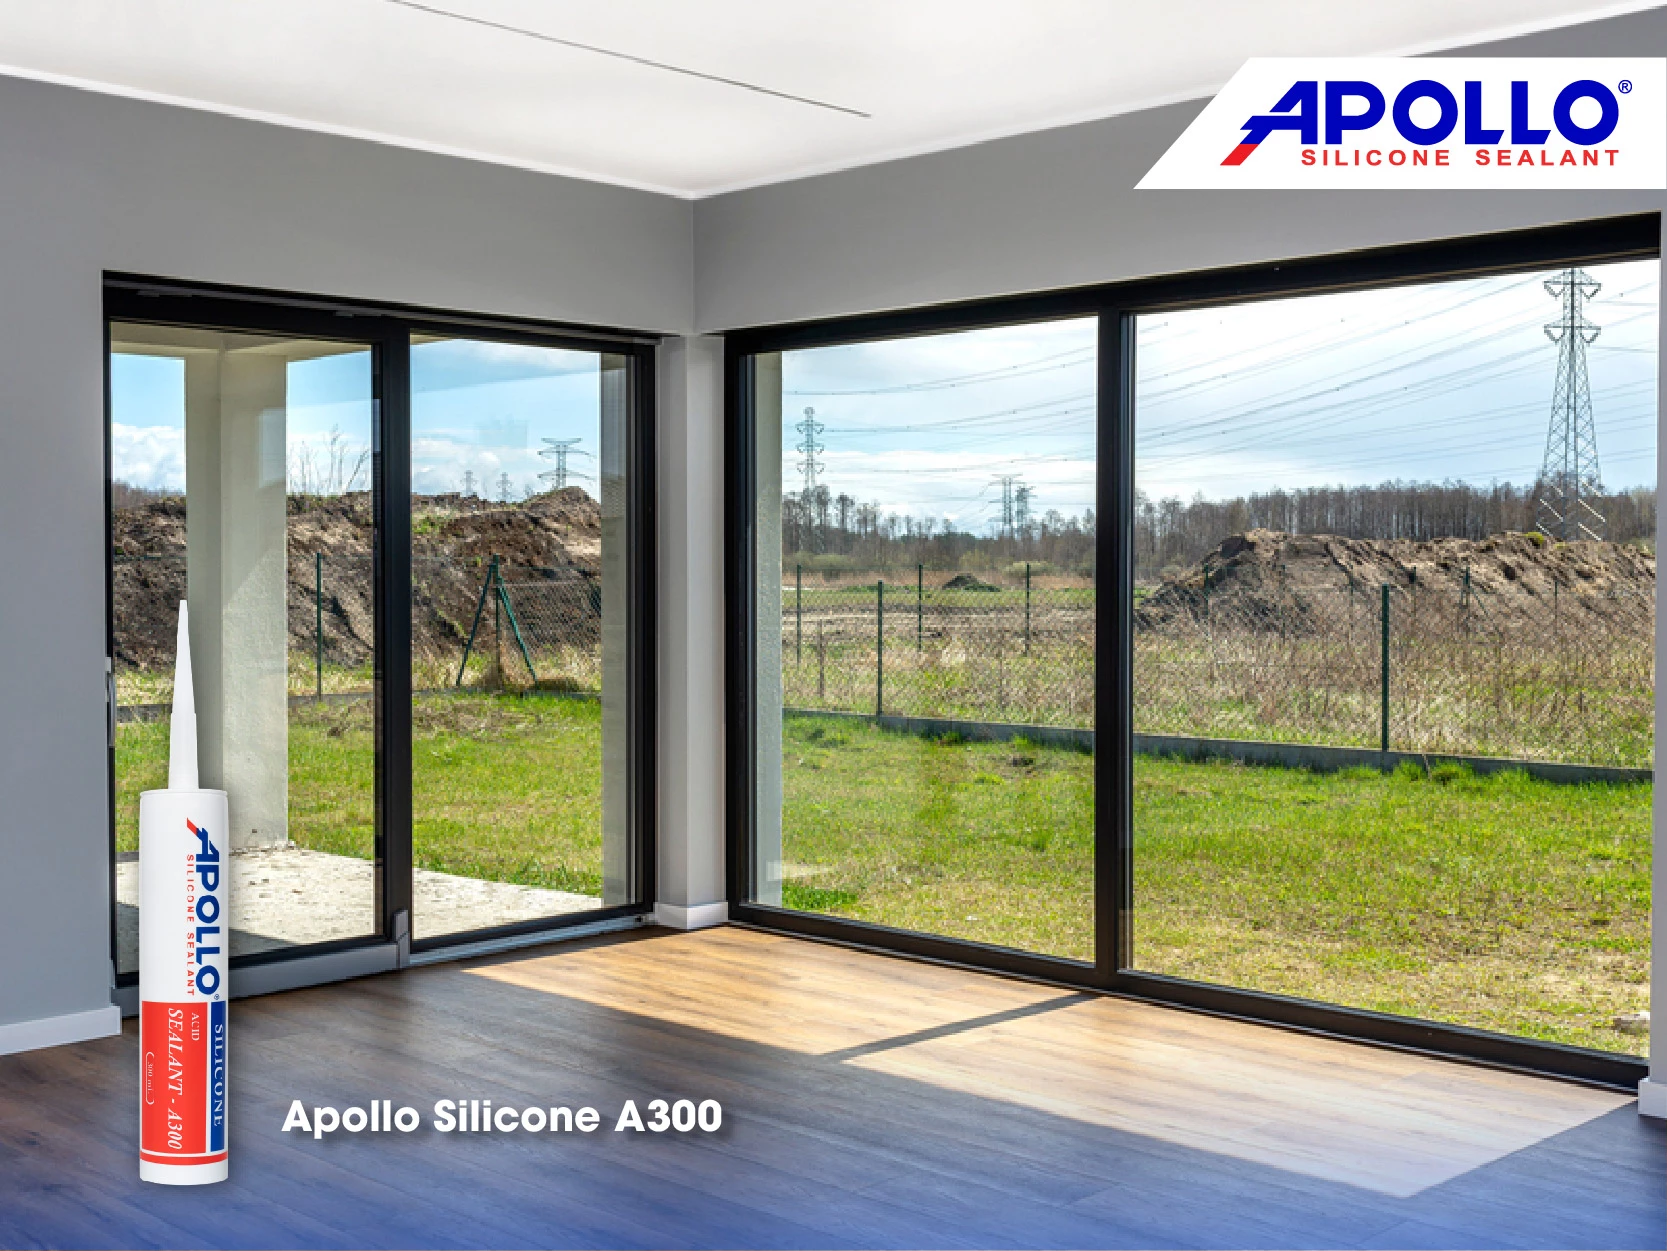 Apollo Silicone A300 - Vua keo kính là sản phẩm chuyên dùng cho cửa kính, cửa sổ được thợ thầy tin dùng